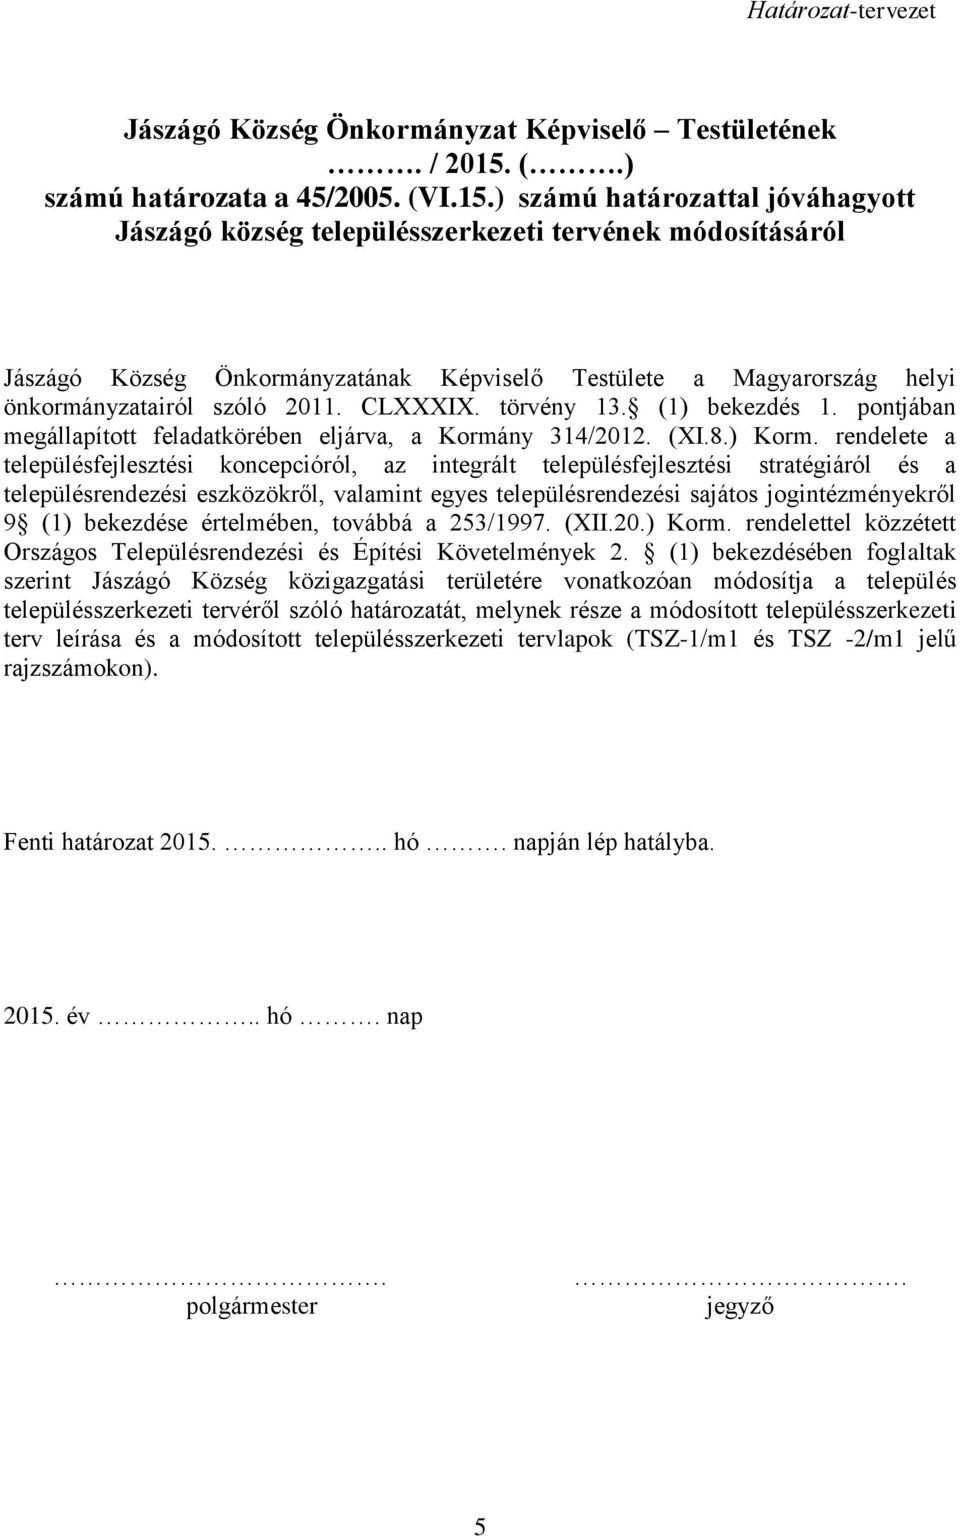 ) számú határozattal jóváhagyott Jászágó község településszerkezeti tervének módosításáról Jászágó Község Önkormányzatának Képviselő Testülete a Magyarország helyi önkormányzatairól szóló 2011.